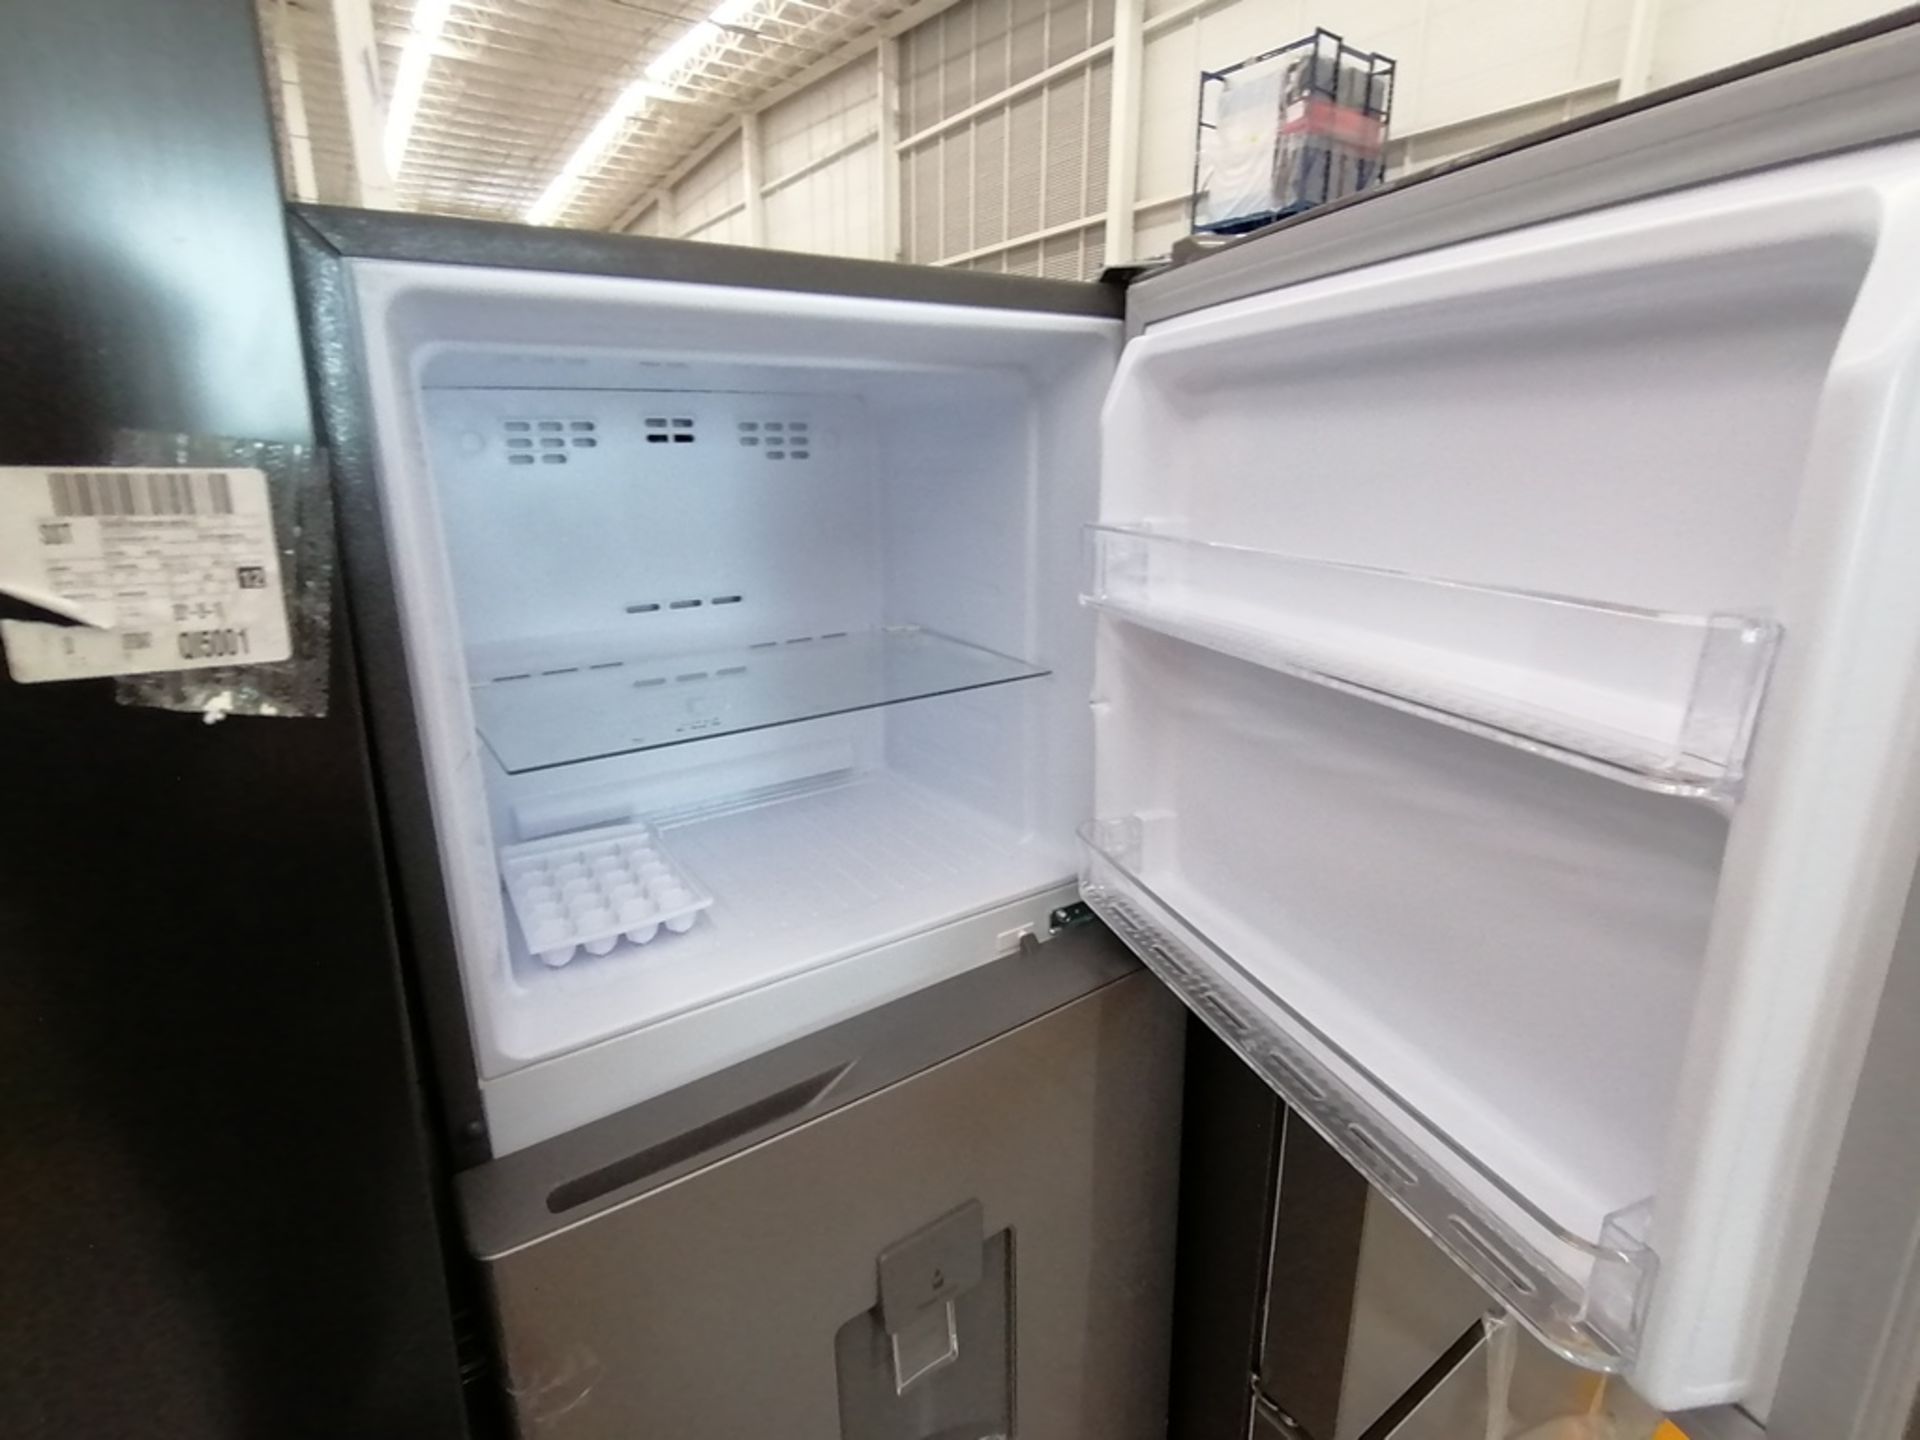 Lote de 2 refrigeradores incluye: 1 Refrigerador, Marca Samsung, Modelo RS28T5B00B1, Serie 0B2V4BAR - Image 5 of 13